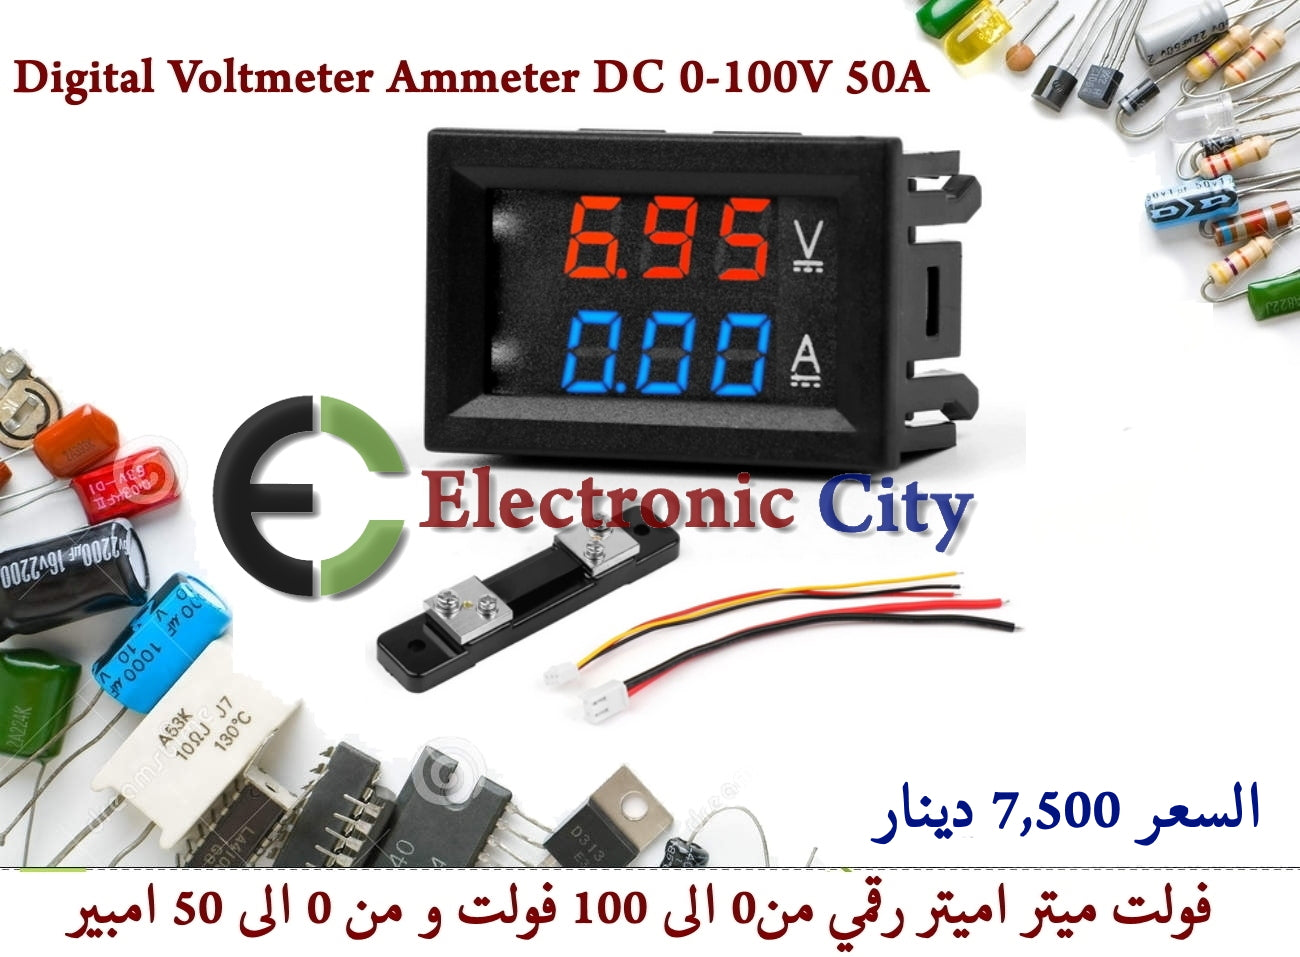 Digital Voltmeter Ammeter DC 0-100V 50A #E5 X30557 + 030033